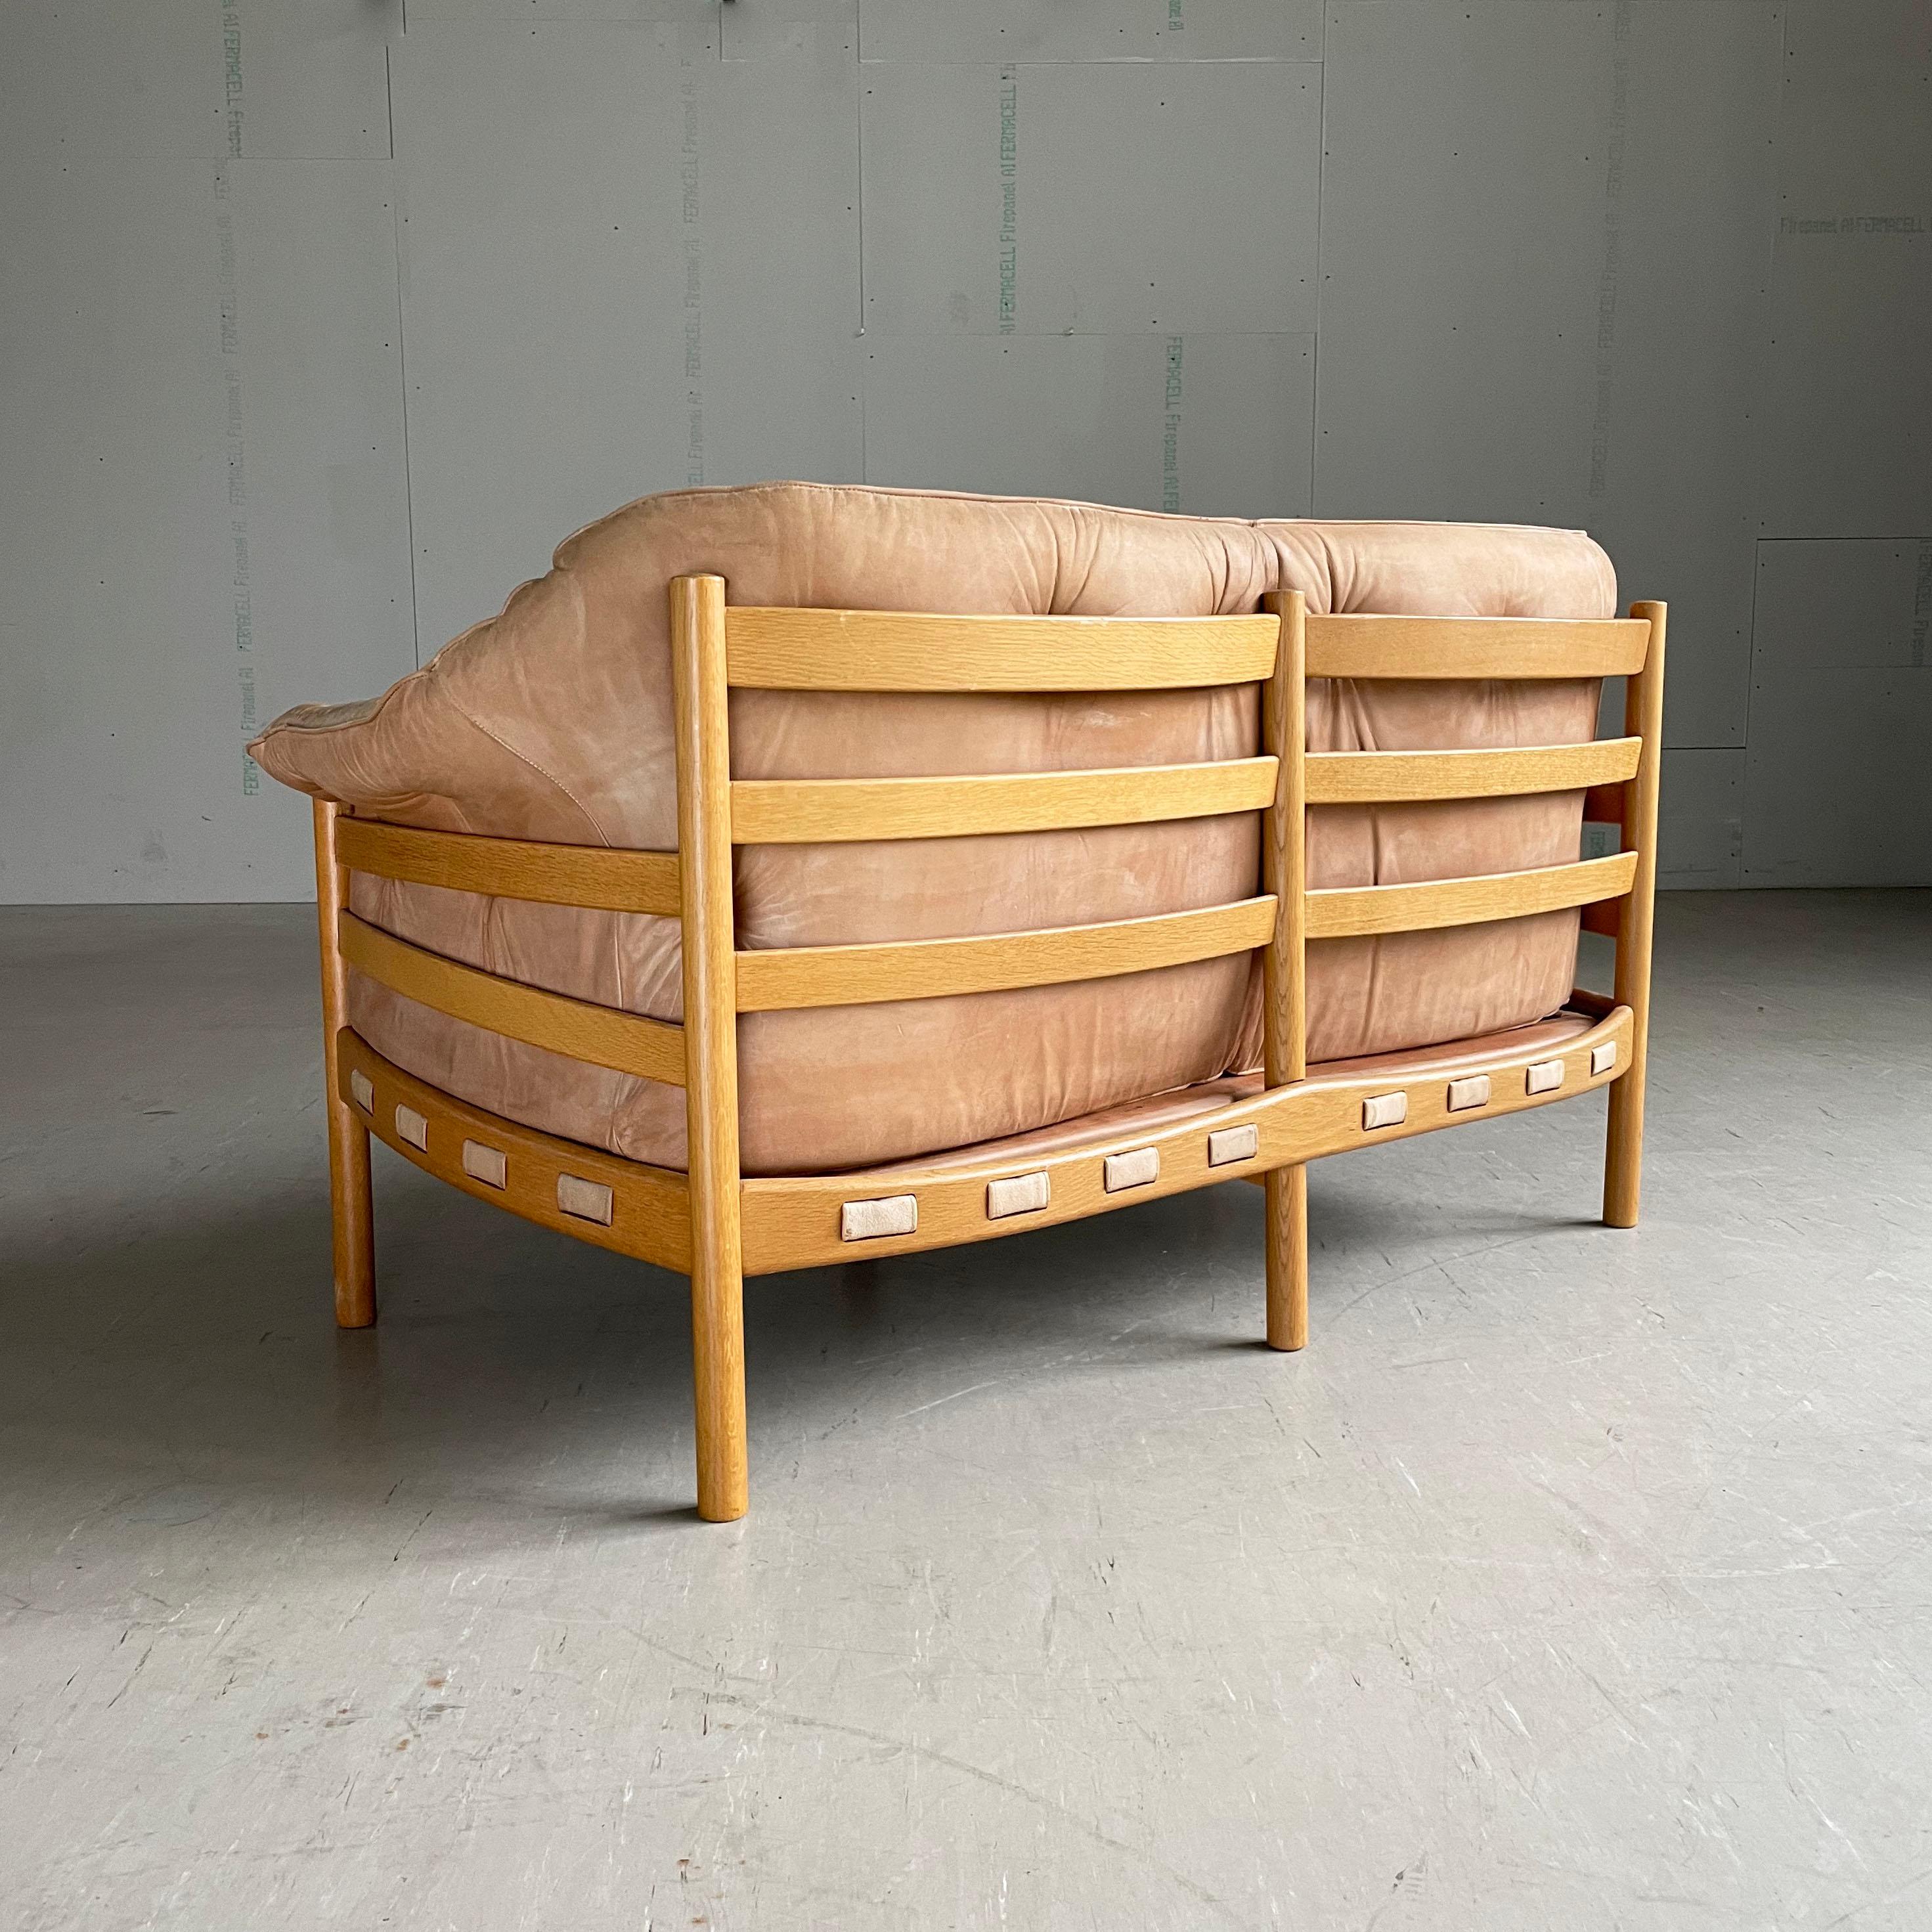 Canapé en cuir 2 places Sven Ellekaer, produit par Coja. Cuir nubuck naturel avec cadre en chêne.